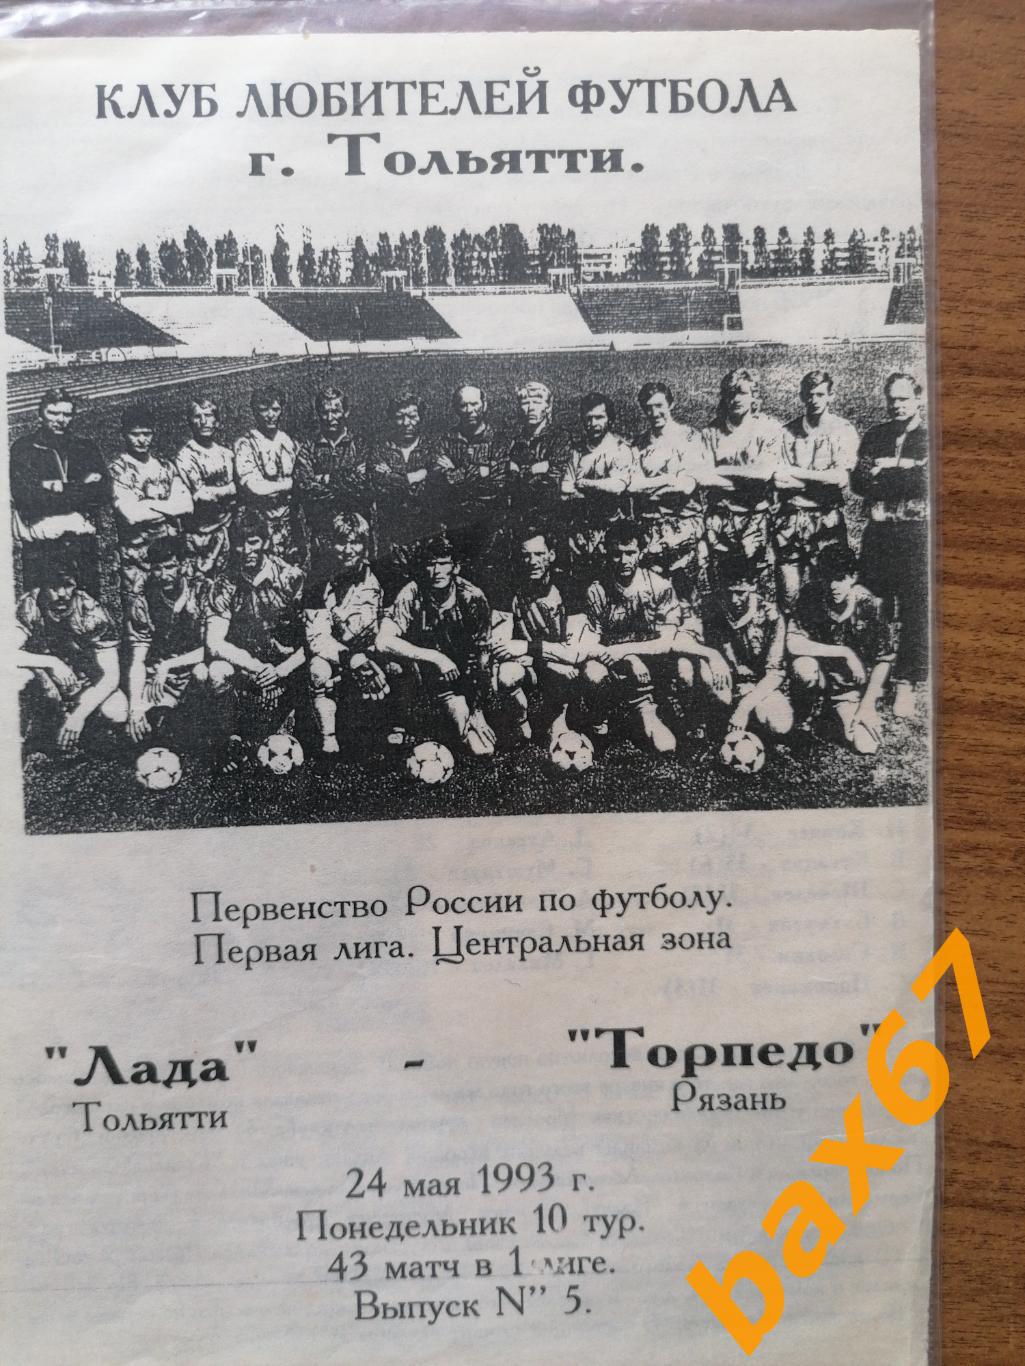 Лада Тольятти - Торпедо Рязань 24.05.1993 КЛФ